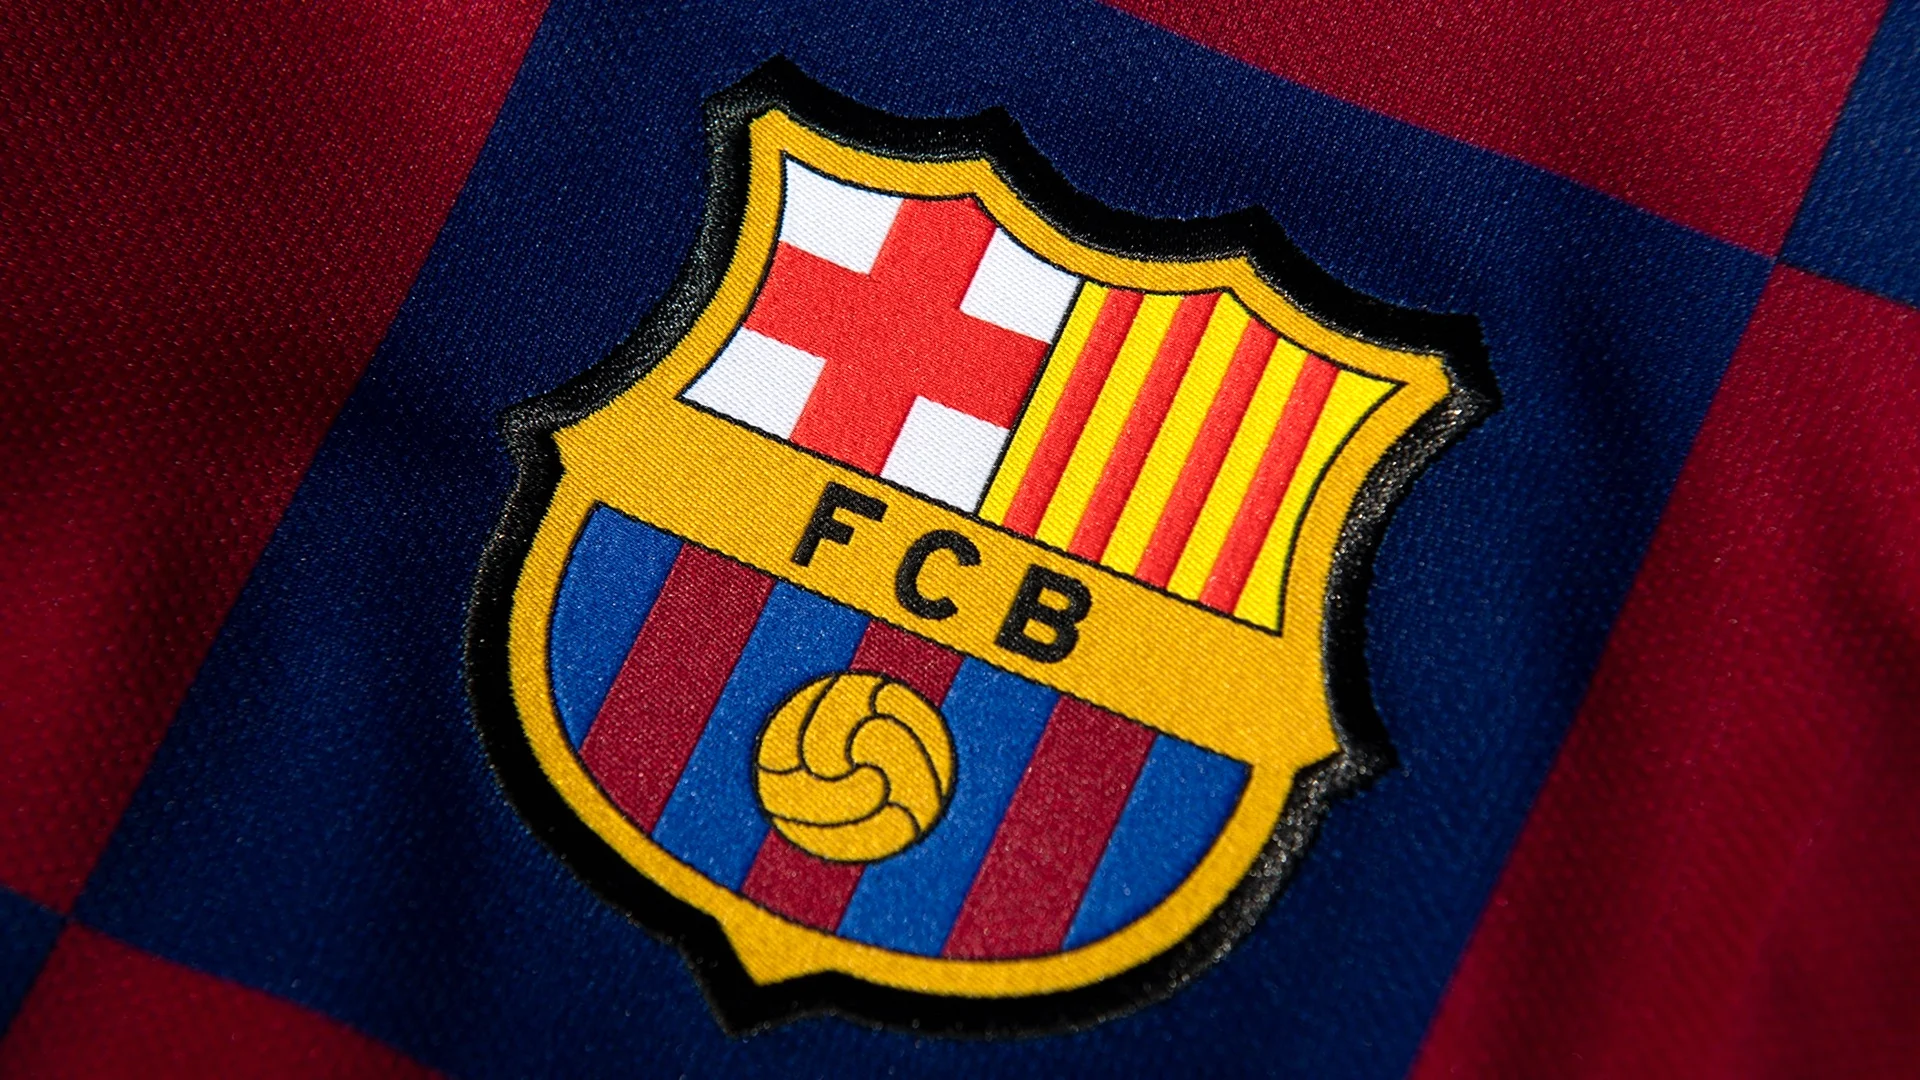 Барселона лого